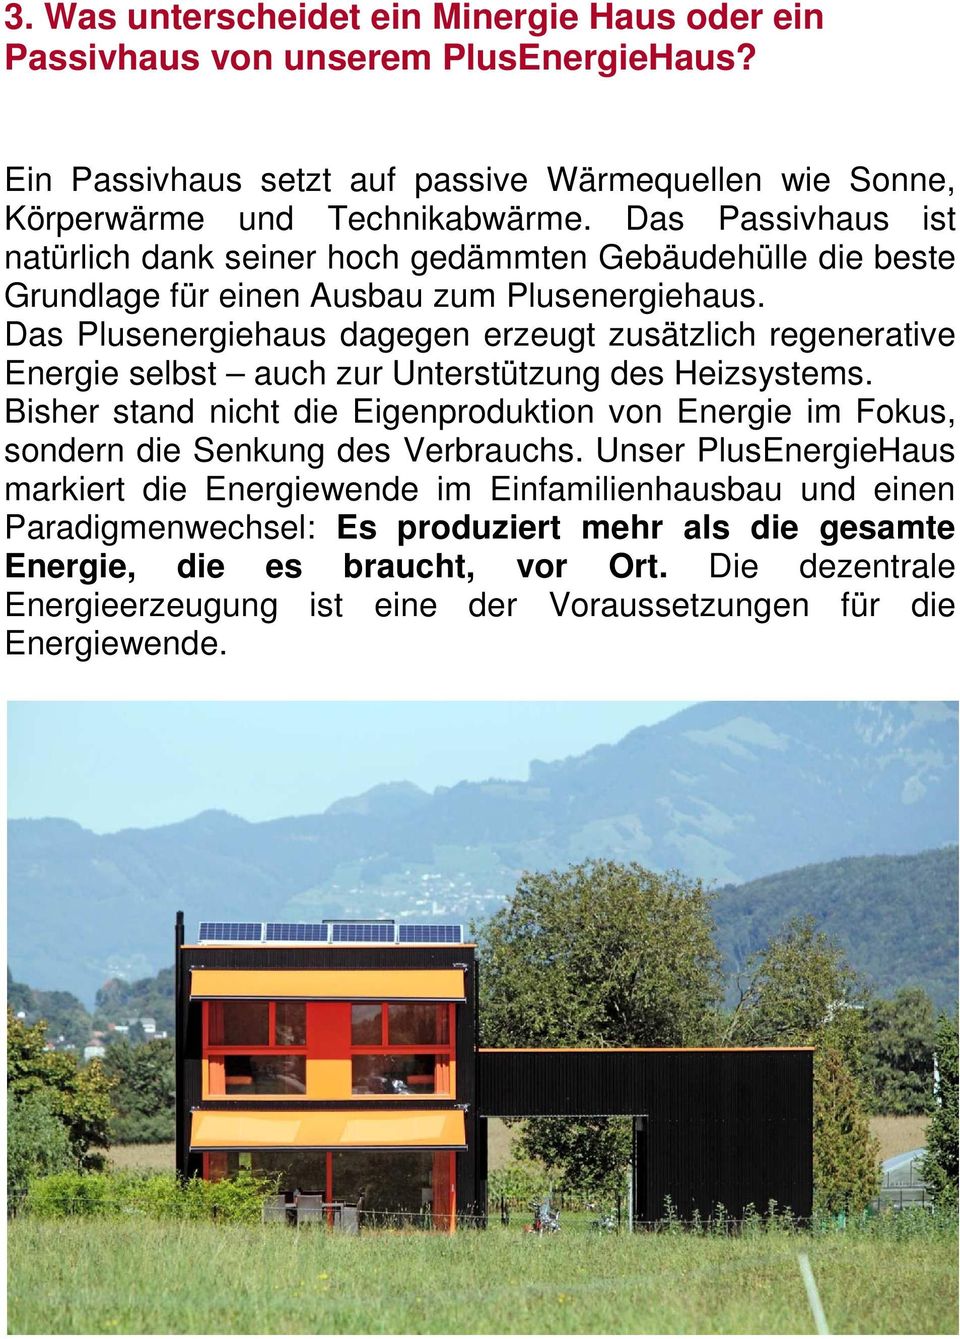 Das Plusenergiehaus dagegen erzeugt zusätzlich regenerative Energie selbst auch zur Unterstützung des Heizsystems.